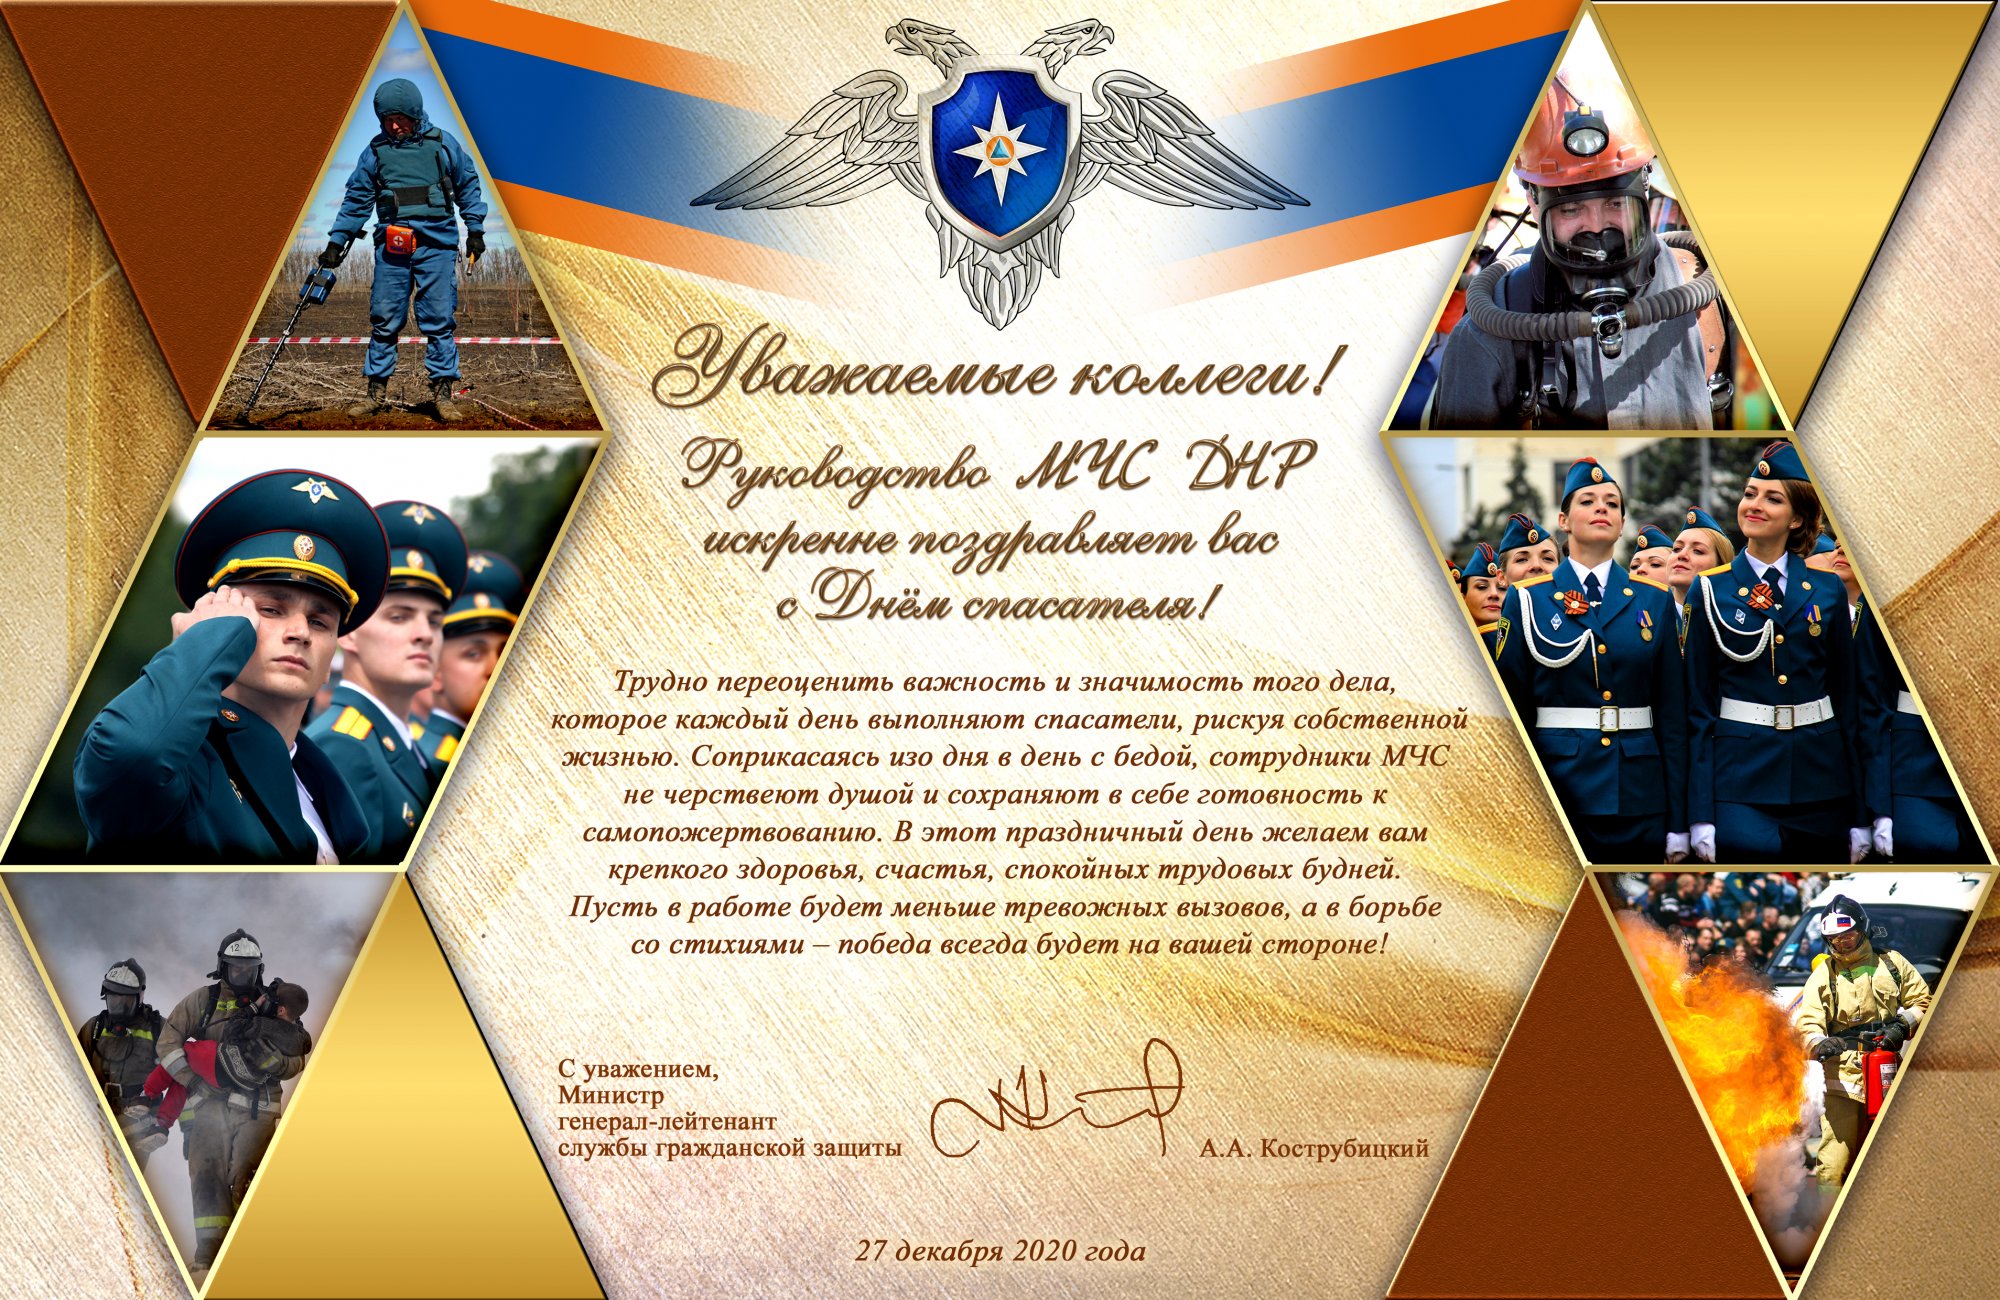 Поздравление с Днем Спасателя от Министра и руководства МЧС ДНР